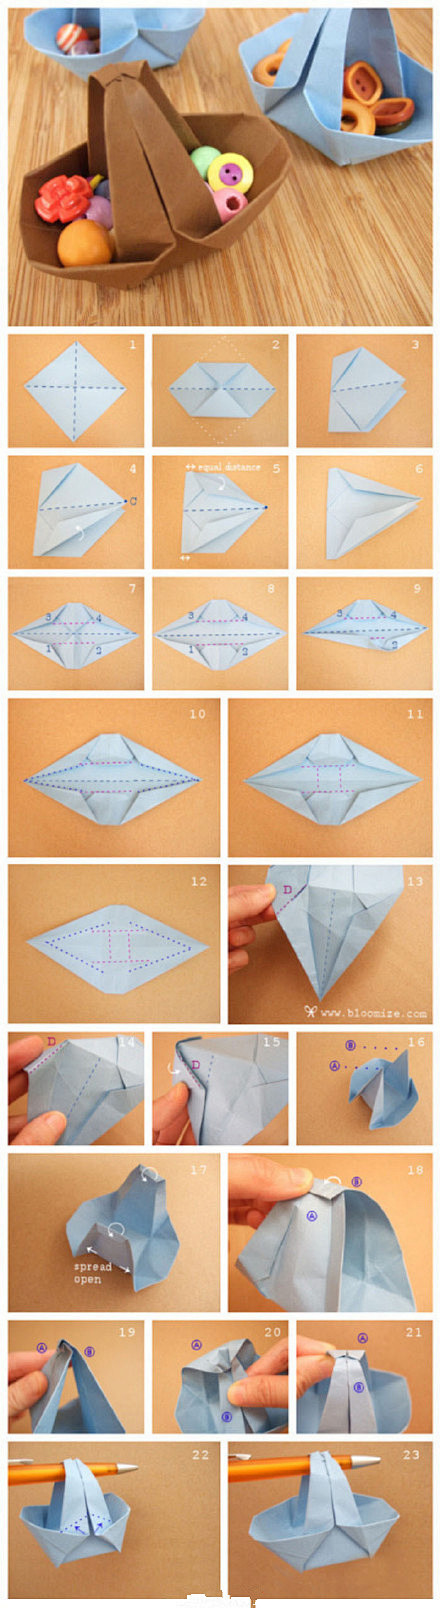 9款实用折纸教程，可以装小东西哦
#DI...